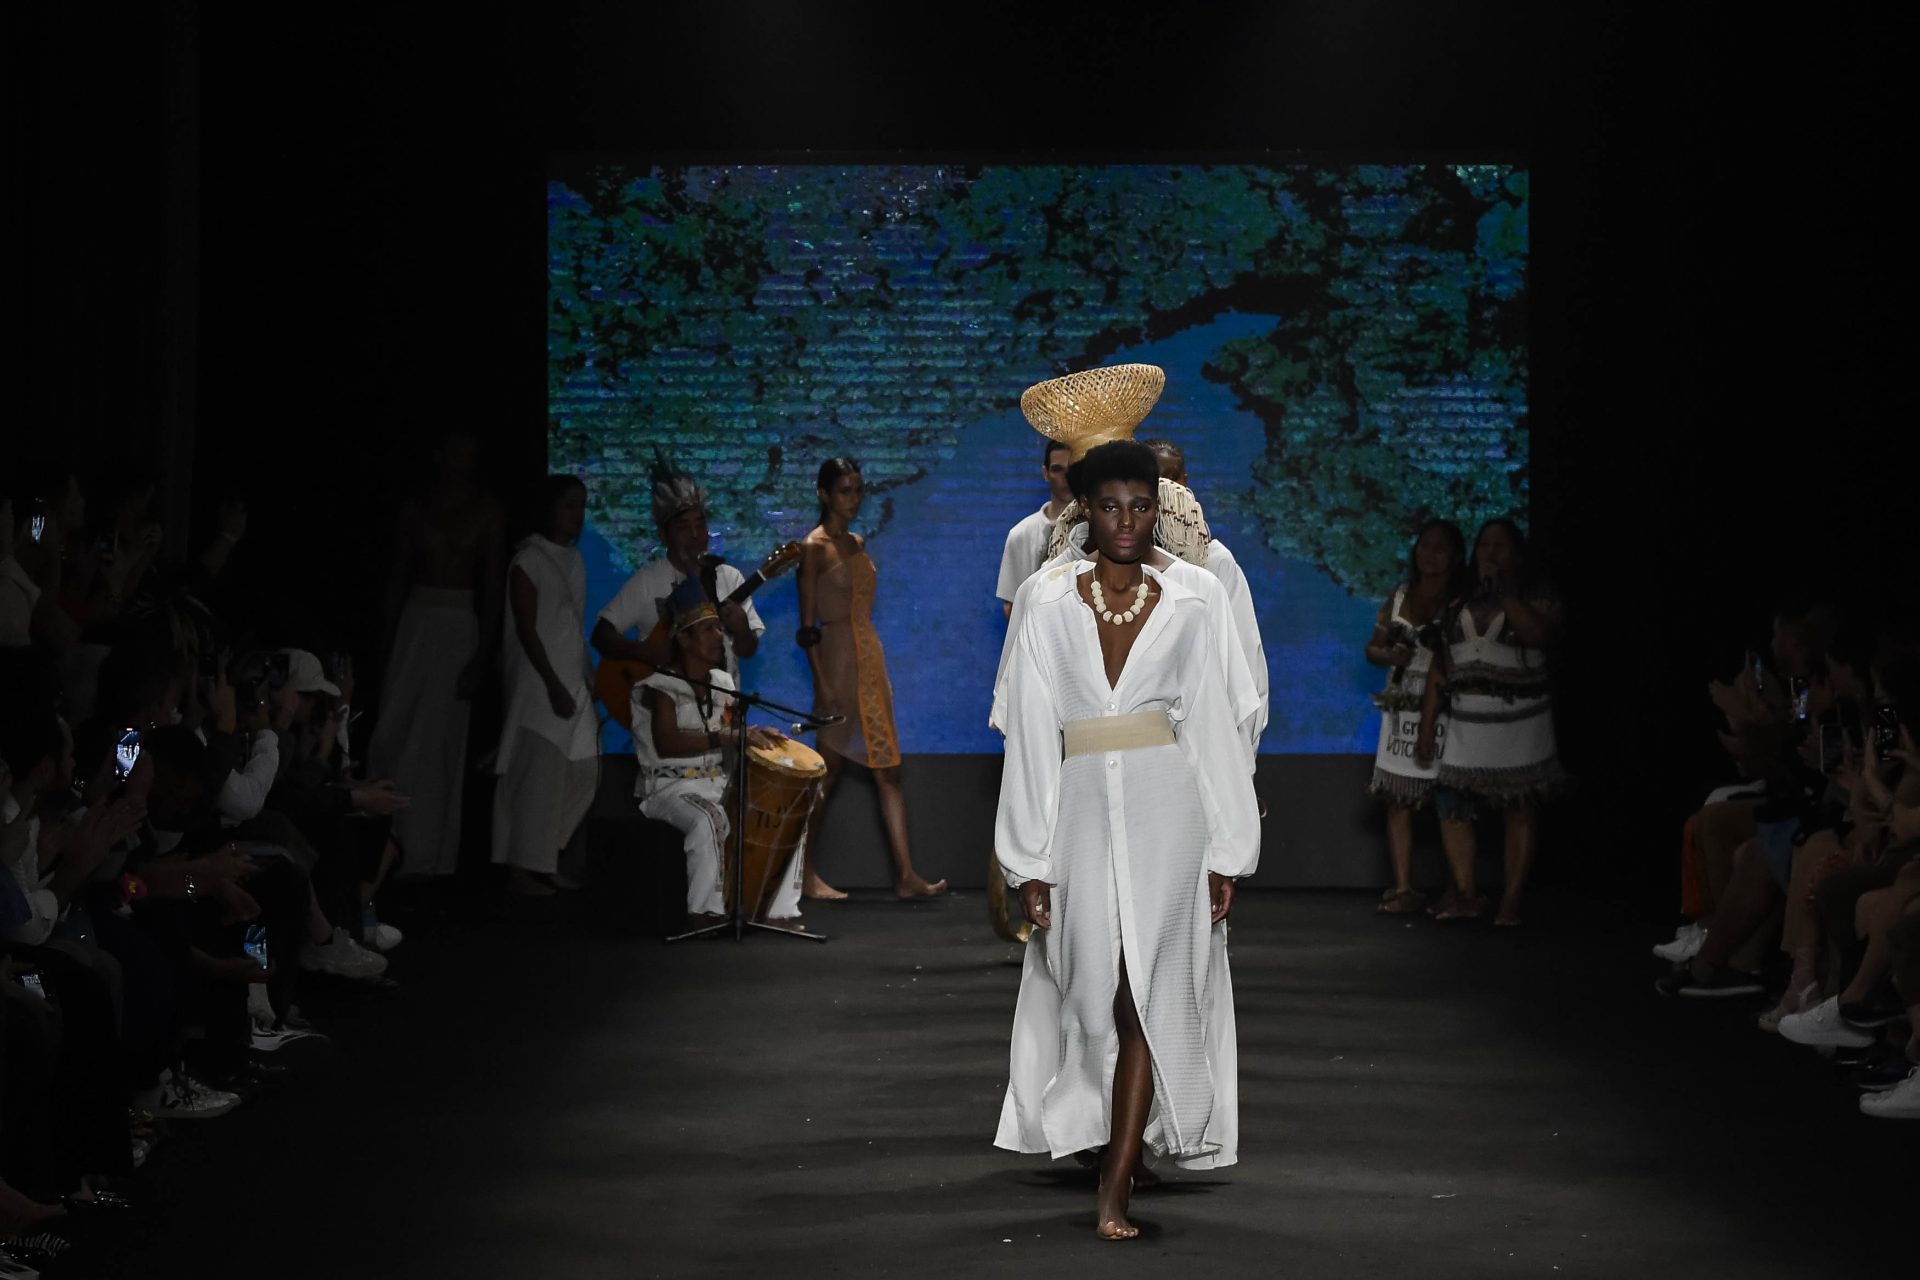 Desfile de moda amazônica realça artistas locais no Amazon Poranga Fashion